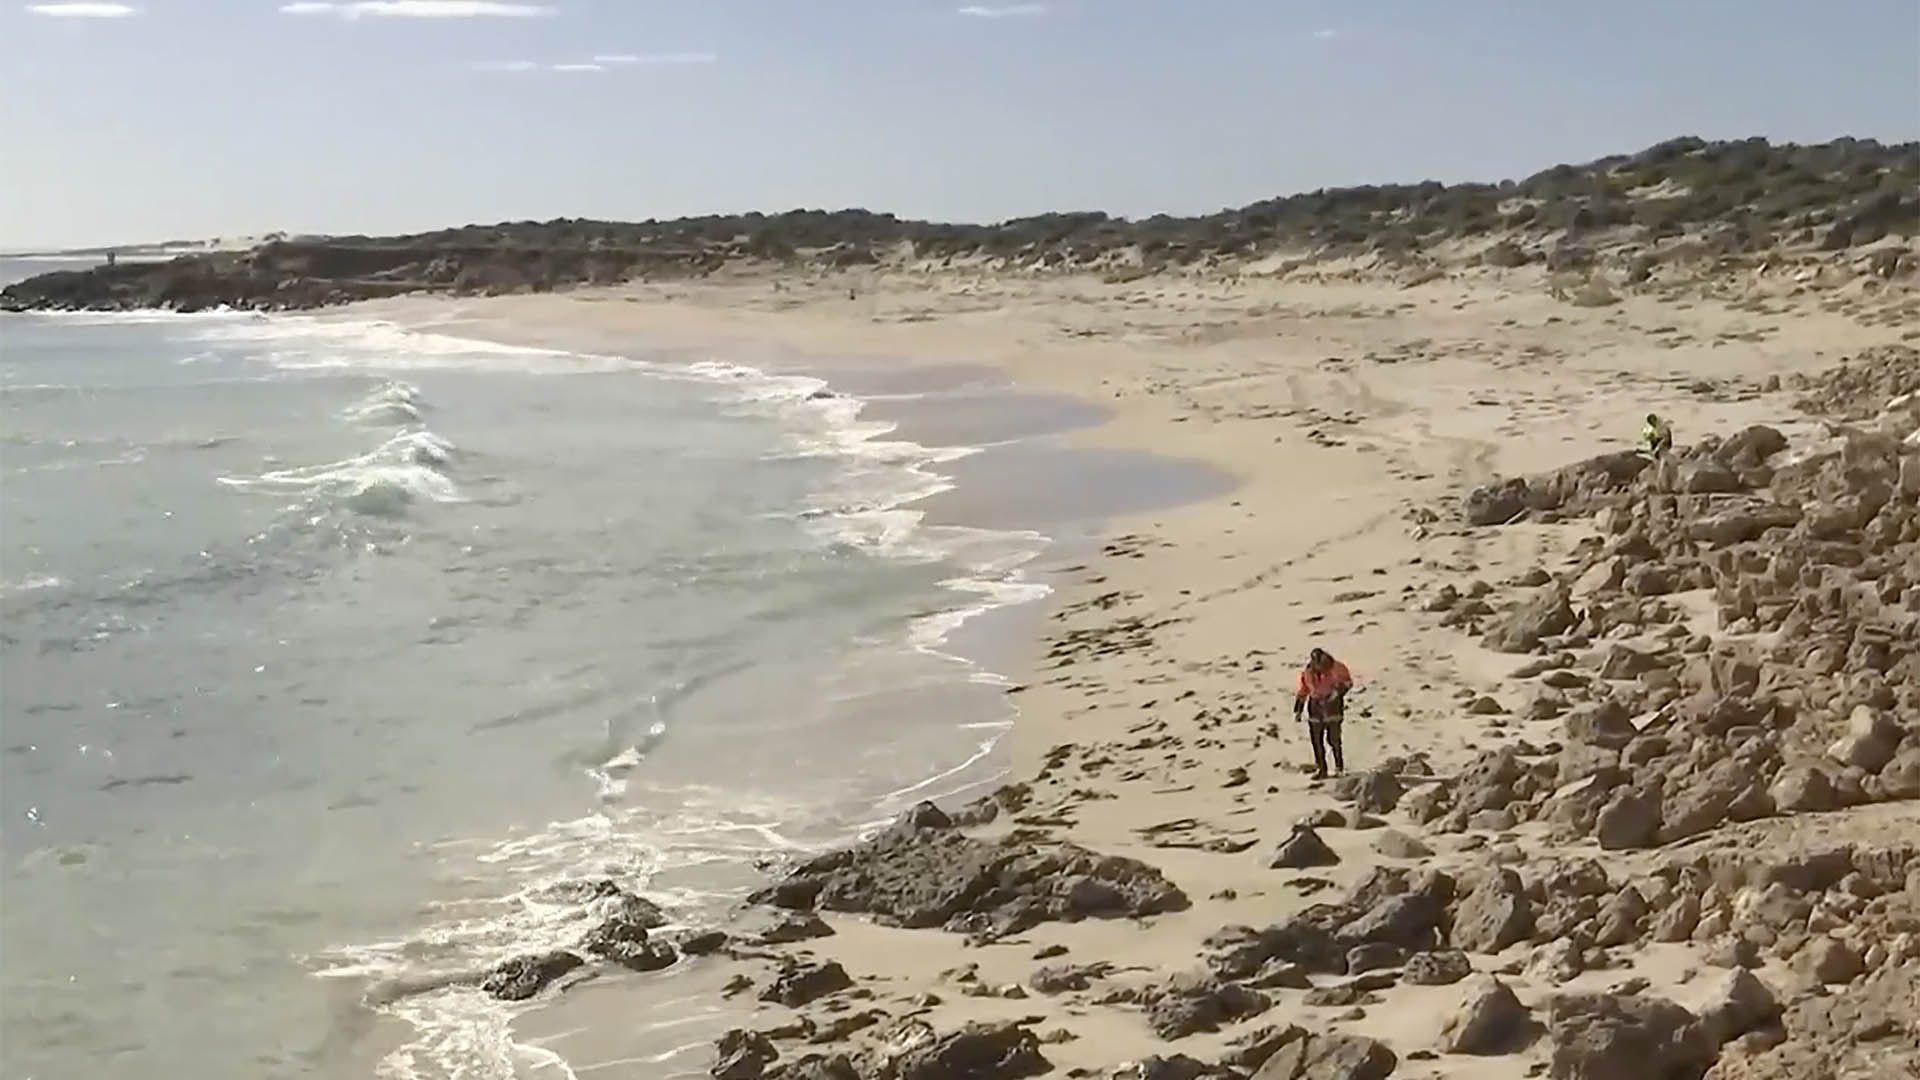 Un tiburón atacó a un surfista en Australia: sólo aparecieron restos de su tabla y el traje térmico